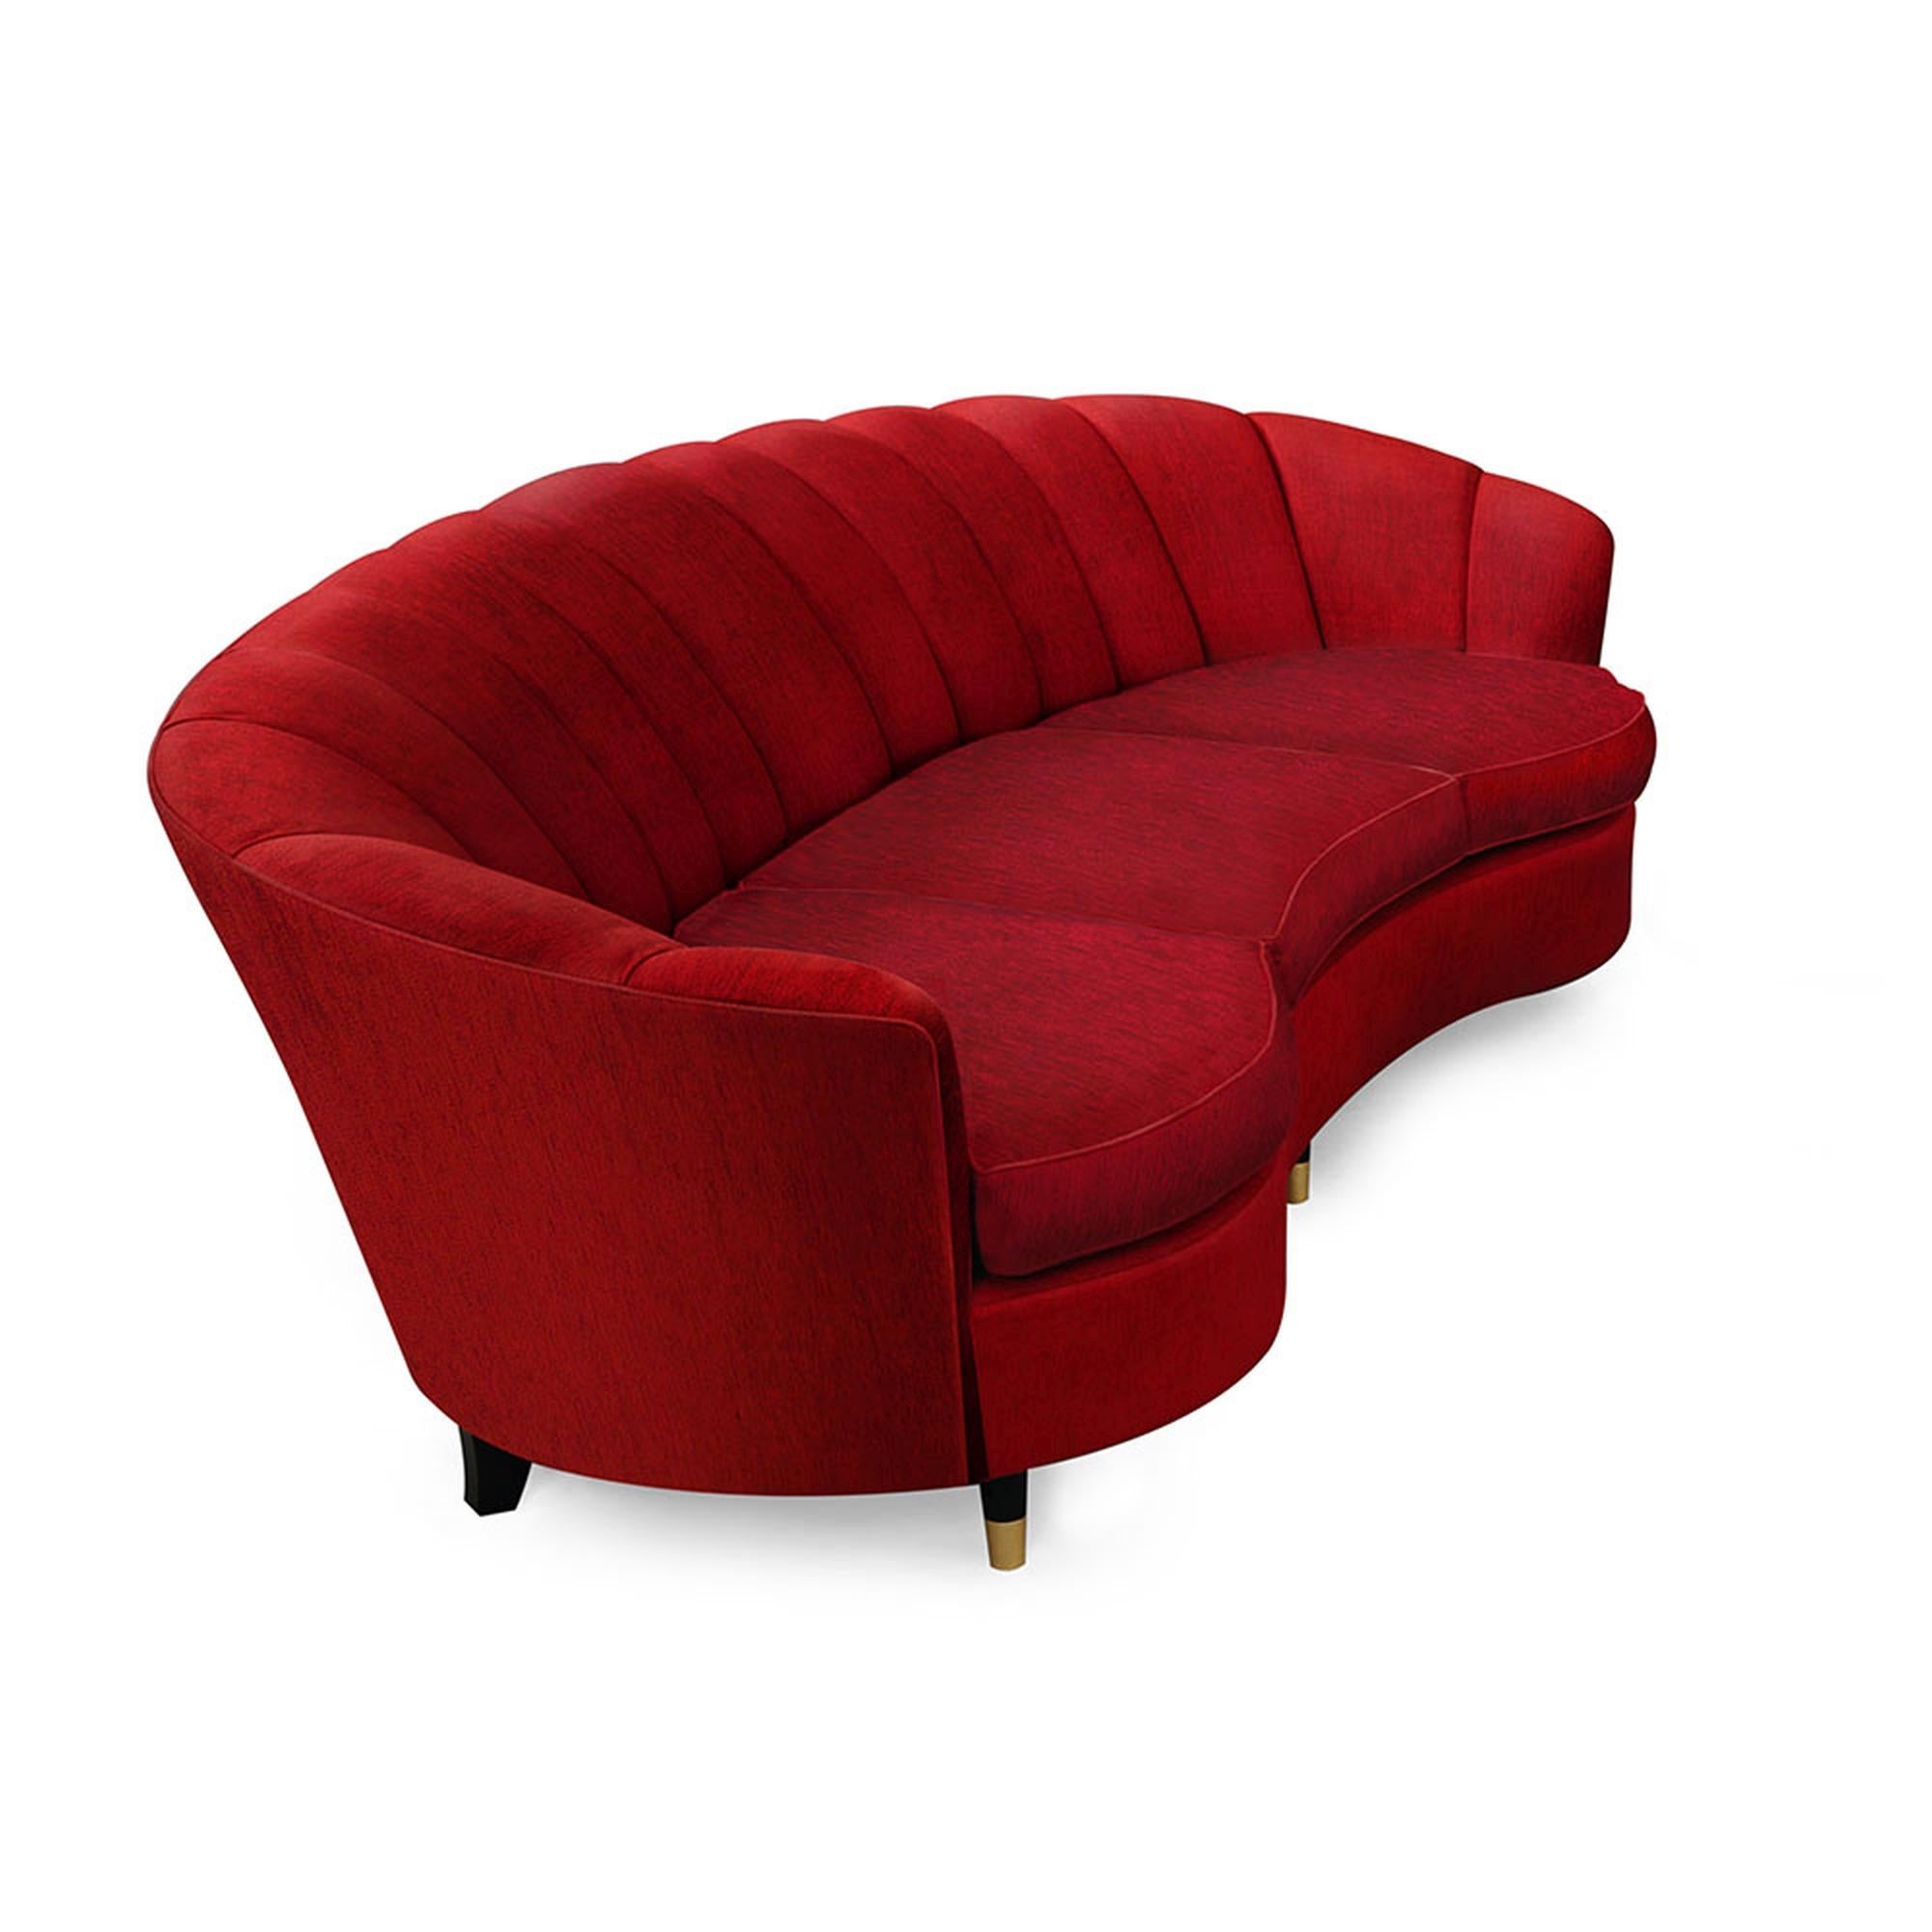 Das Marmont-Sofa ist ein majestätisches Stück, das an ein seltenes Juwel aus der berühmten alten Hollywood-Ära erinnert. Das Sofa mit dem geschwungenen Rahmen und den dramatischen Fächerenden ist auf allen Seiten gepolstert, hat breite, gezackte